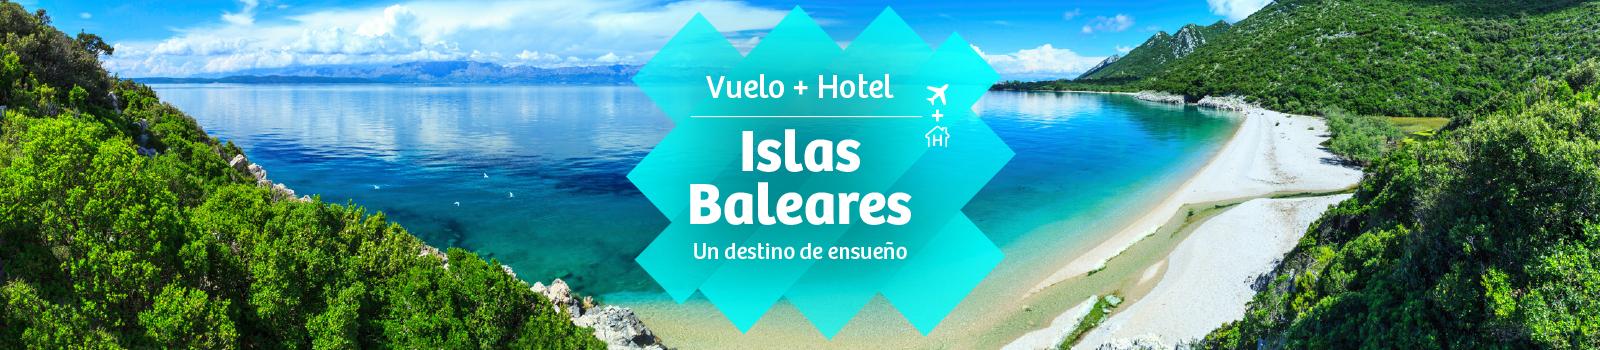 distancia Posicionamiento en buscadores Paisaje Vuelo + Hotel Islas Baleares. Ofertas 2022 | Viajes Carrefour